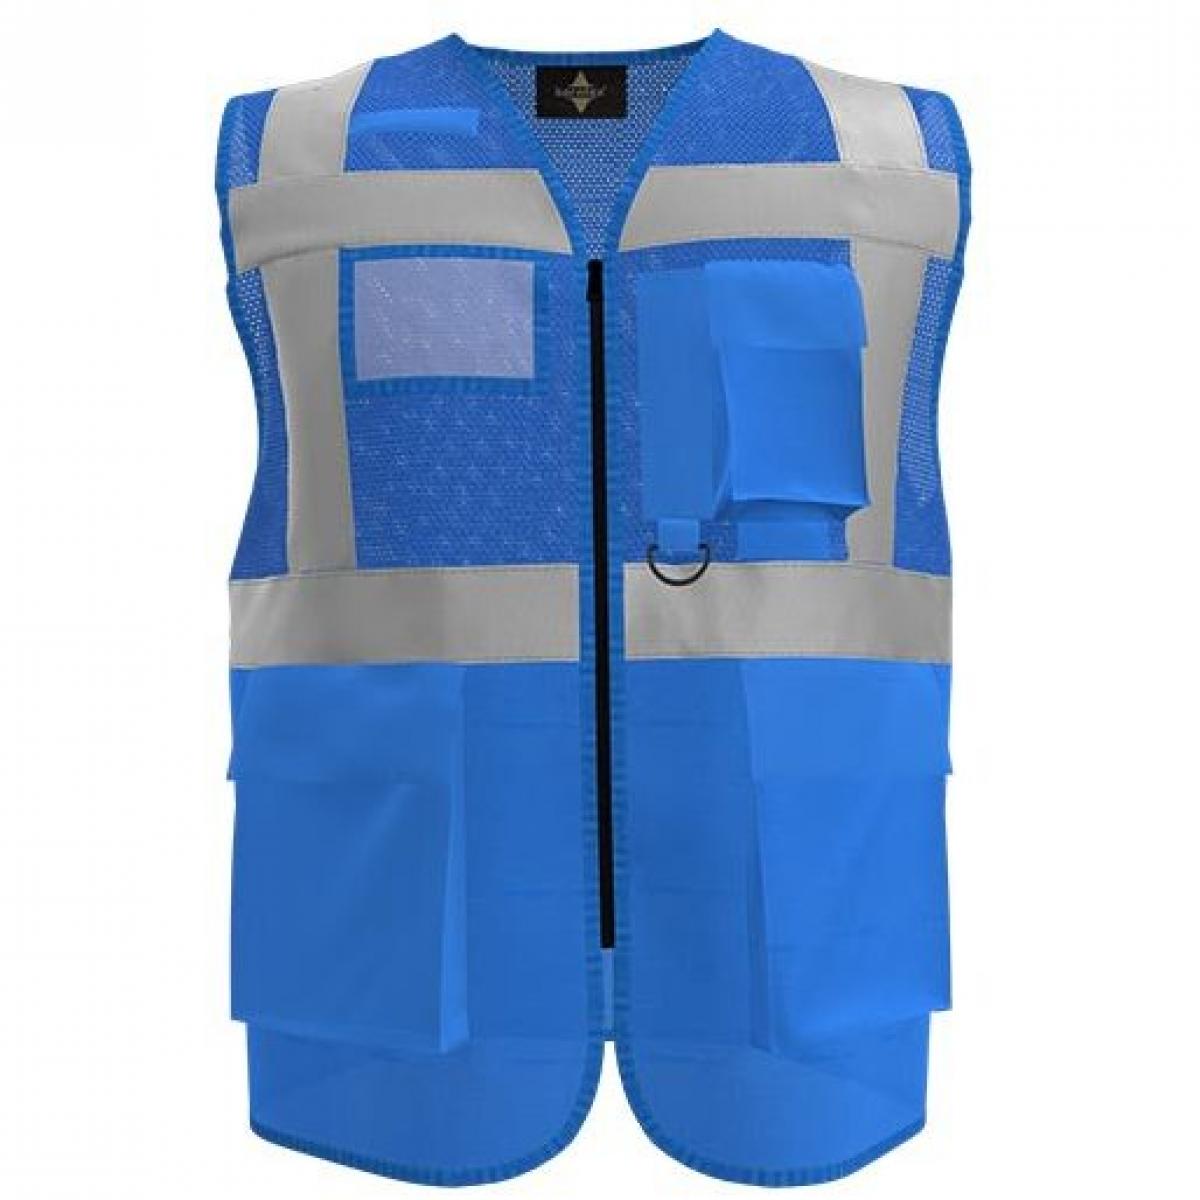 Hersteller: Korntex Herstellernummer: KXEXQ Artikelbezeichnung: Multifunkitons-Warnweste Mesh Multifunction Vest Farbe: Blue